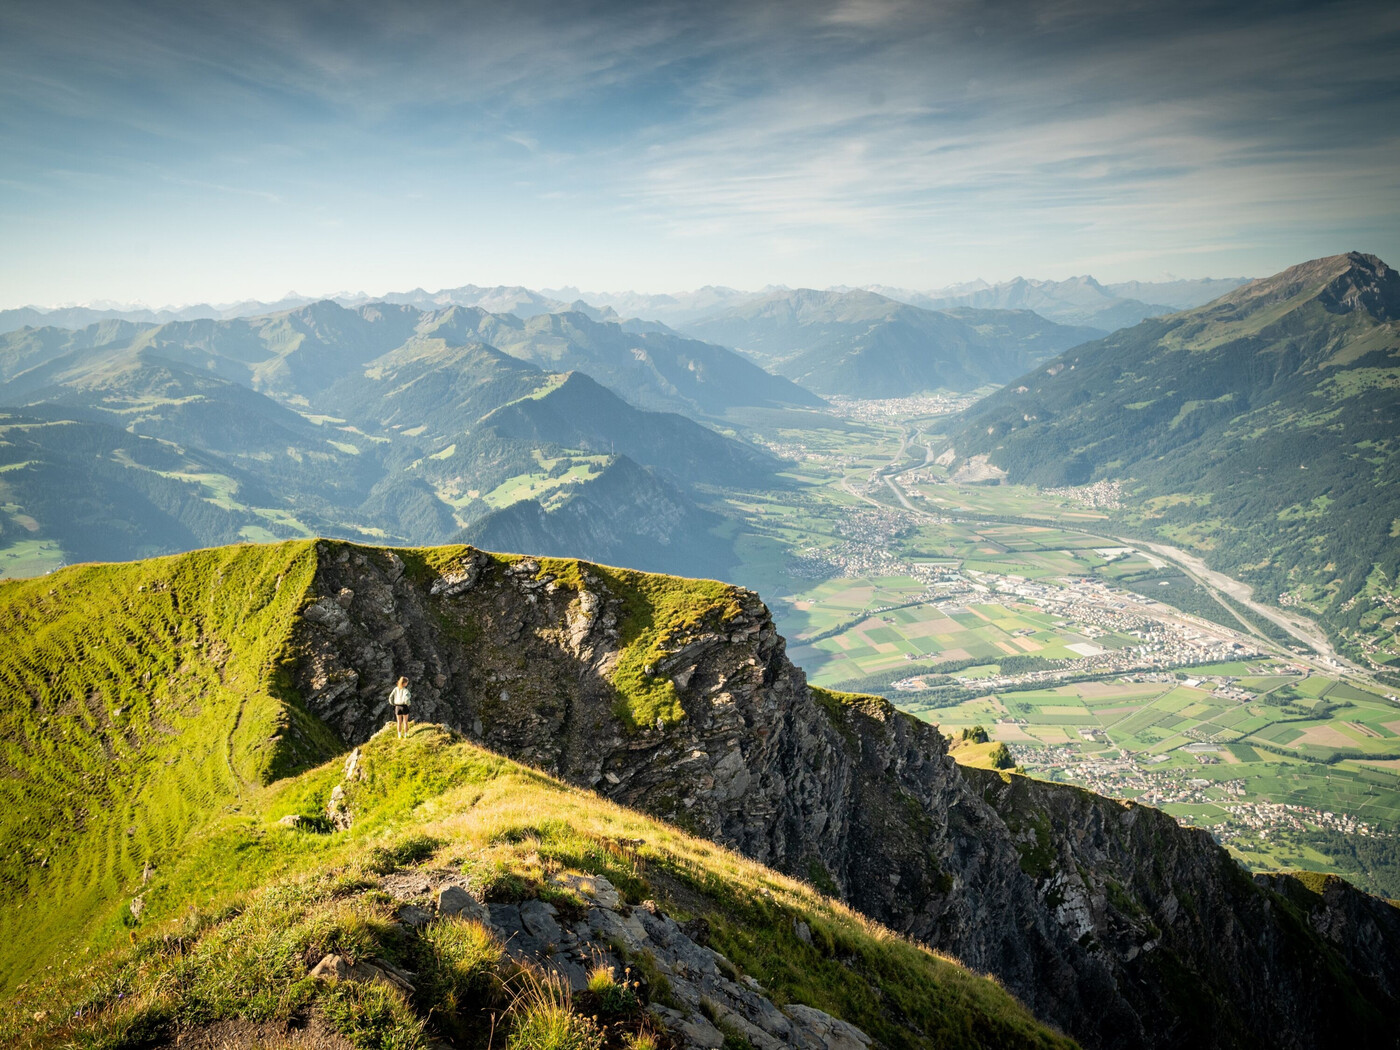 Bergaussicht: Der Vilan-Gipfel bietet ein Panorama auf das Rheintal, die Churfirsten und weitere bekannte Berge wie den Piz Bernina, Piz Kesch, Piz Linard und den Ringelspitz.